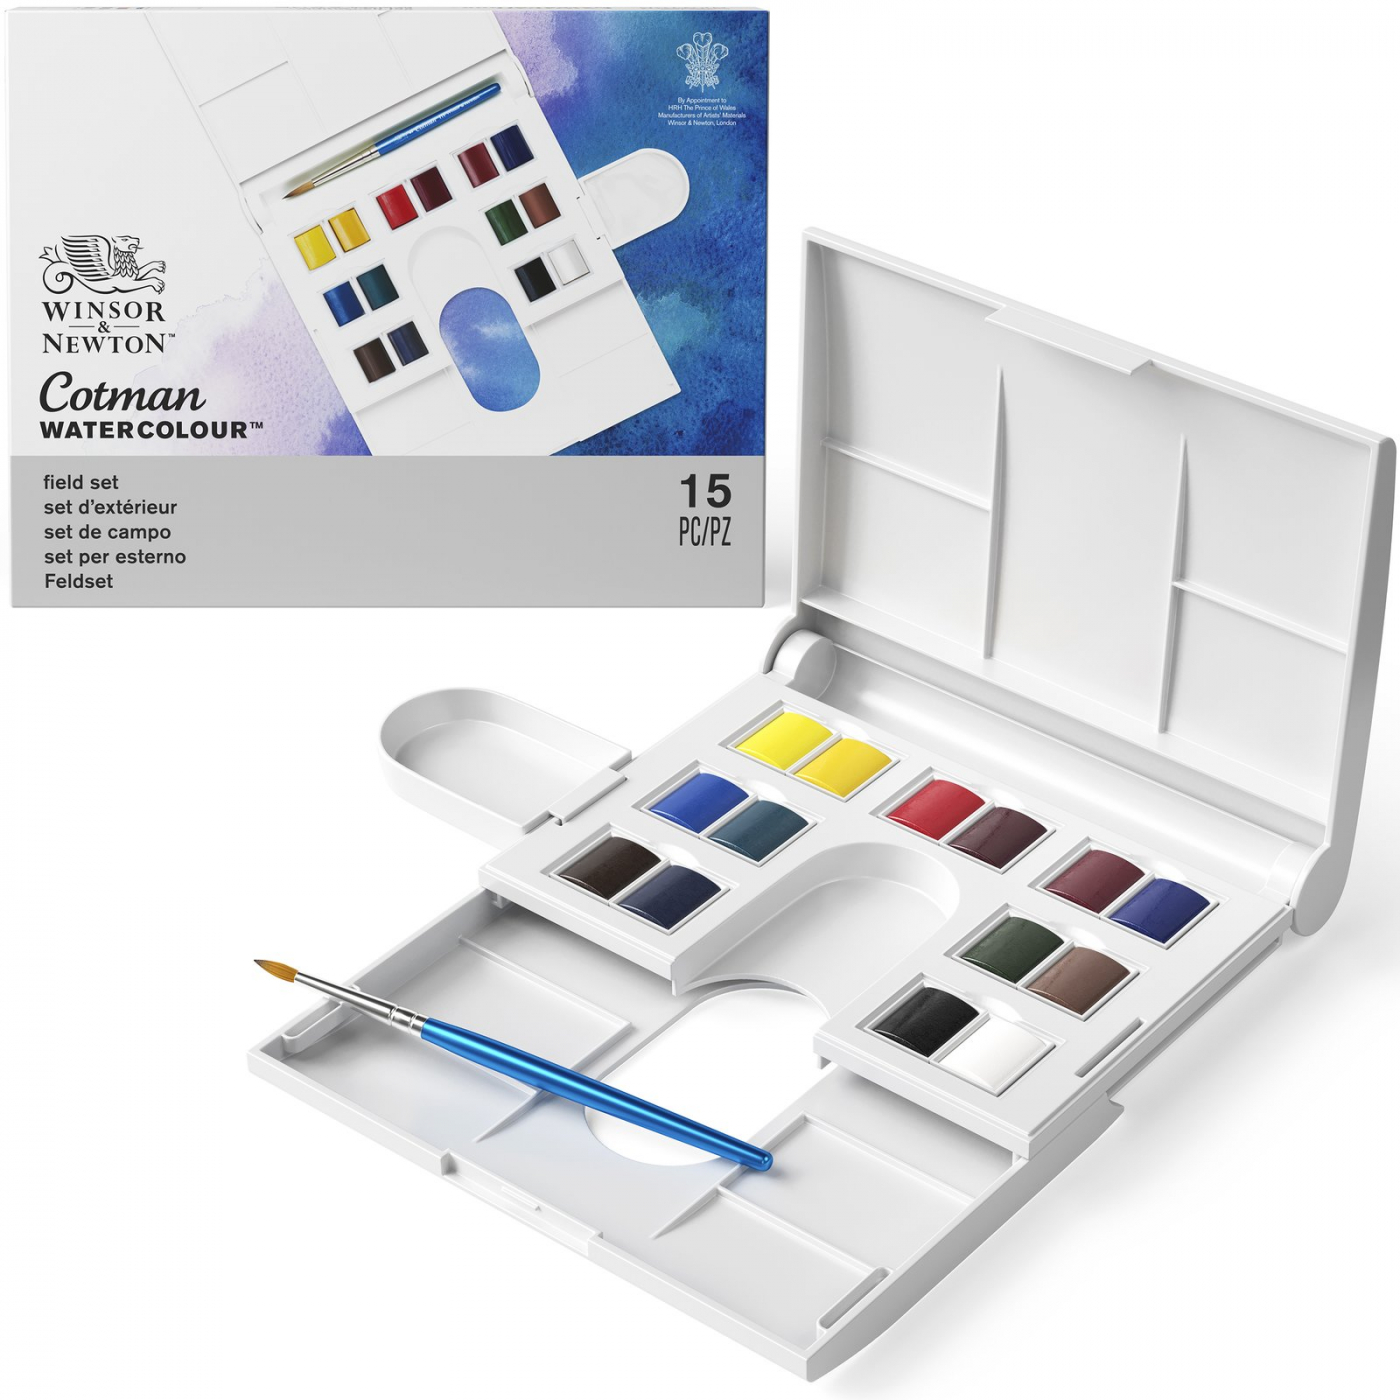 Cotman Watercolour Complete Pocket Set (16 Colors) (Winsor